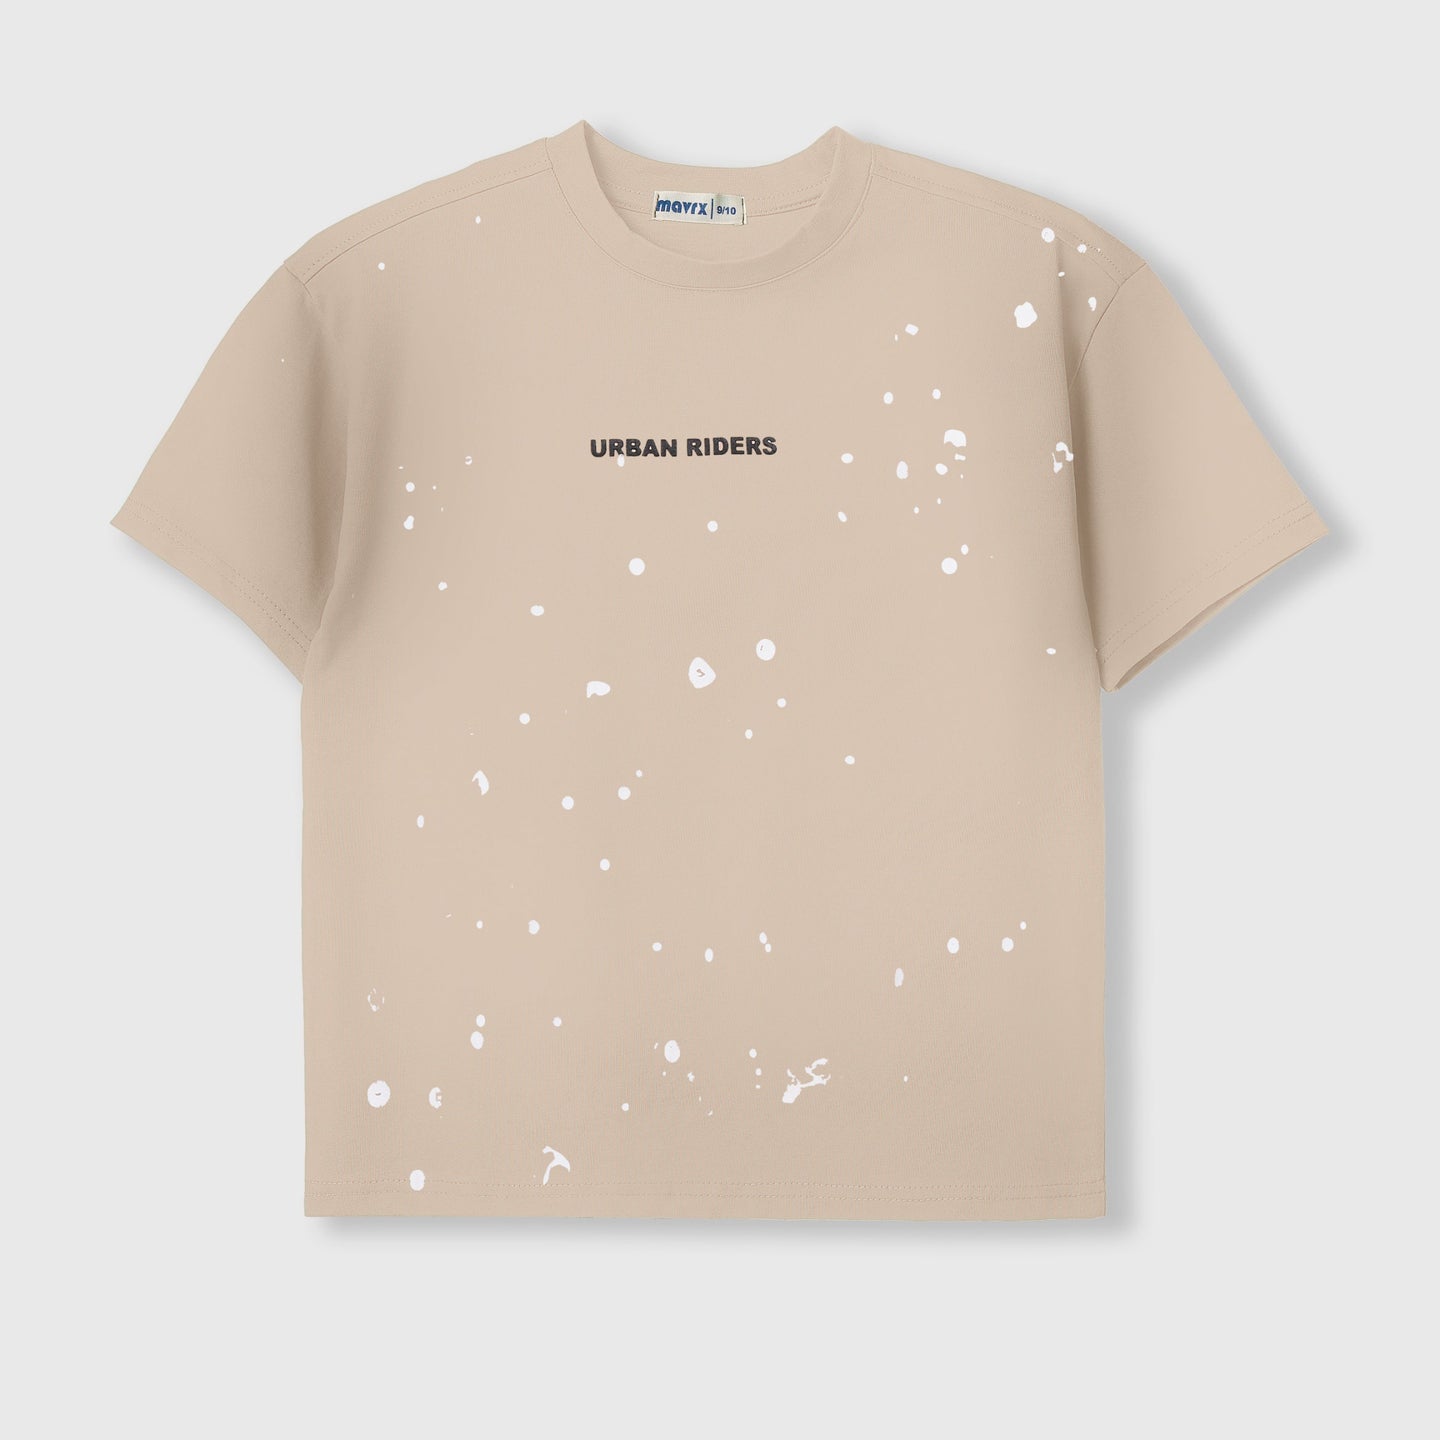 UrbanRiders Printed T-shirt - Mavrx